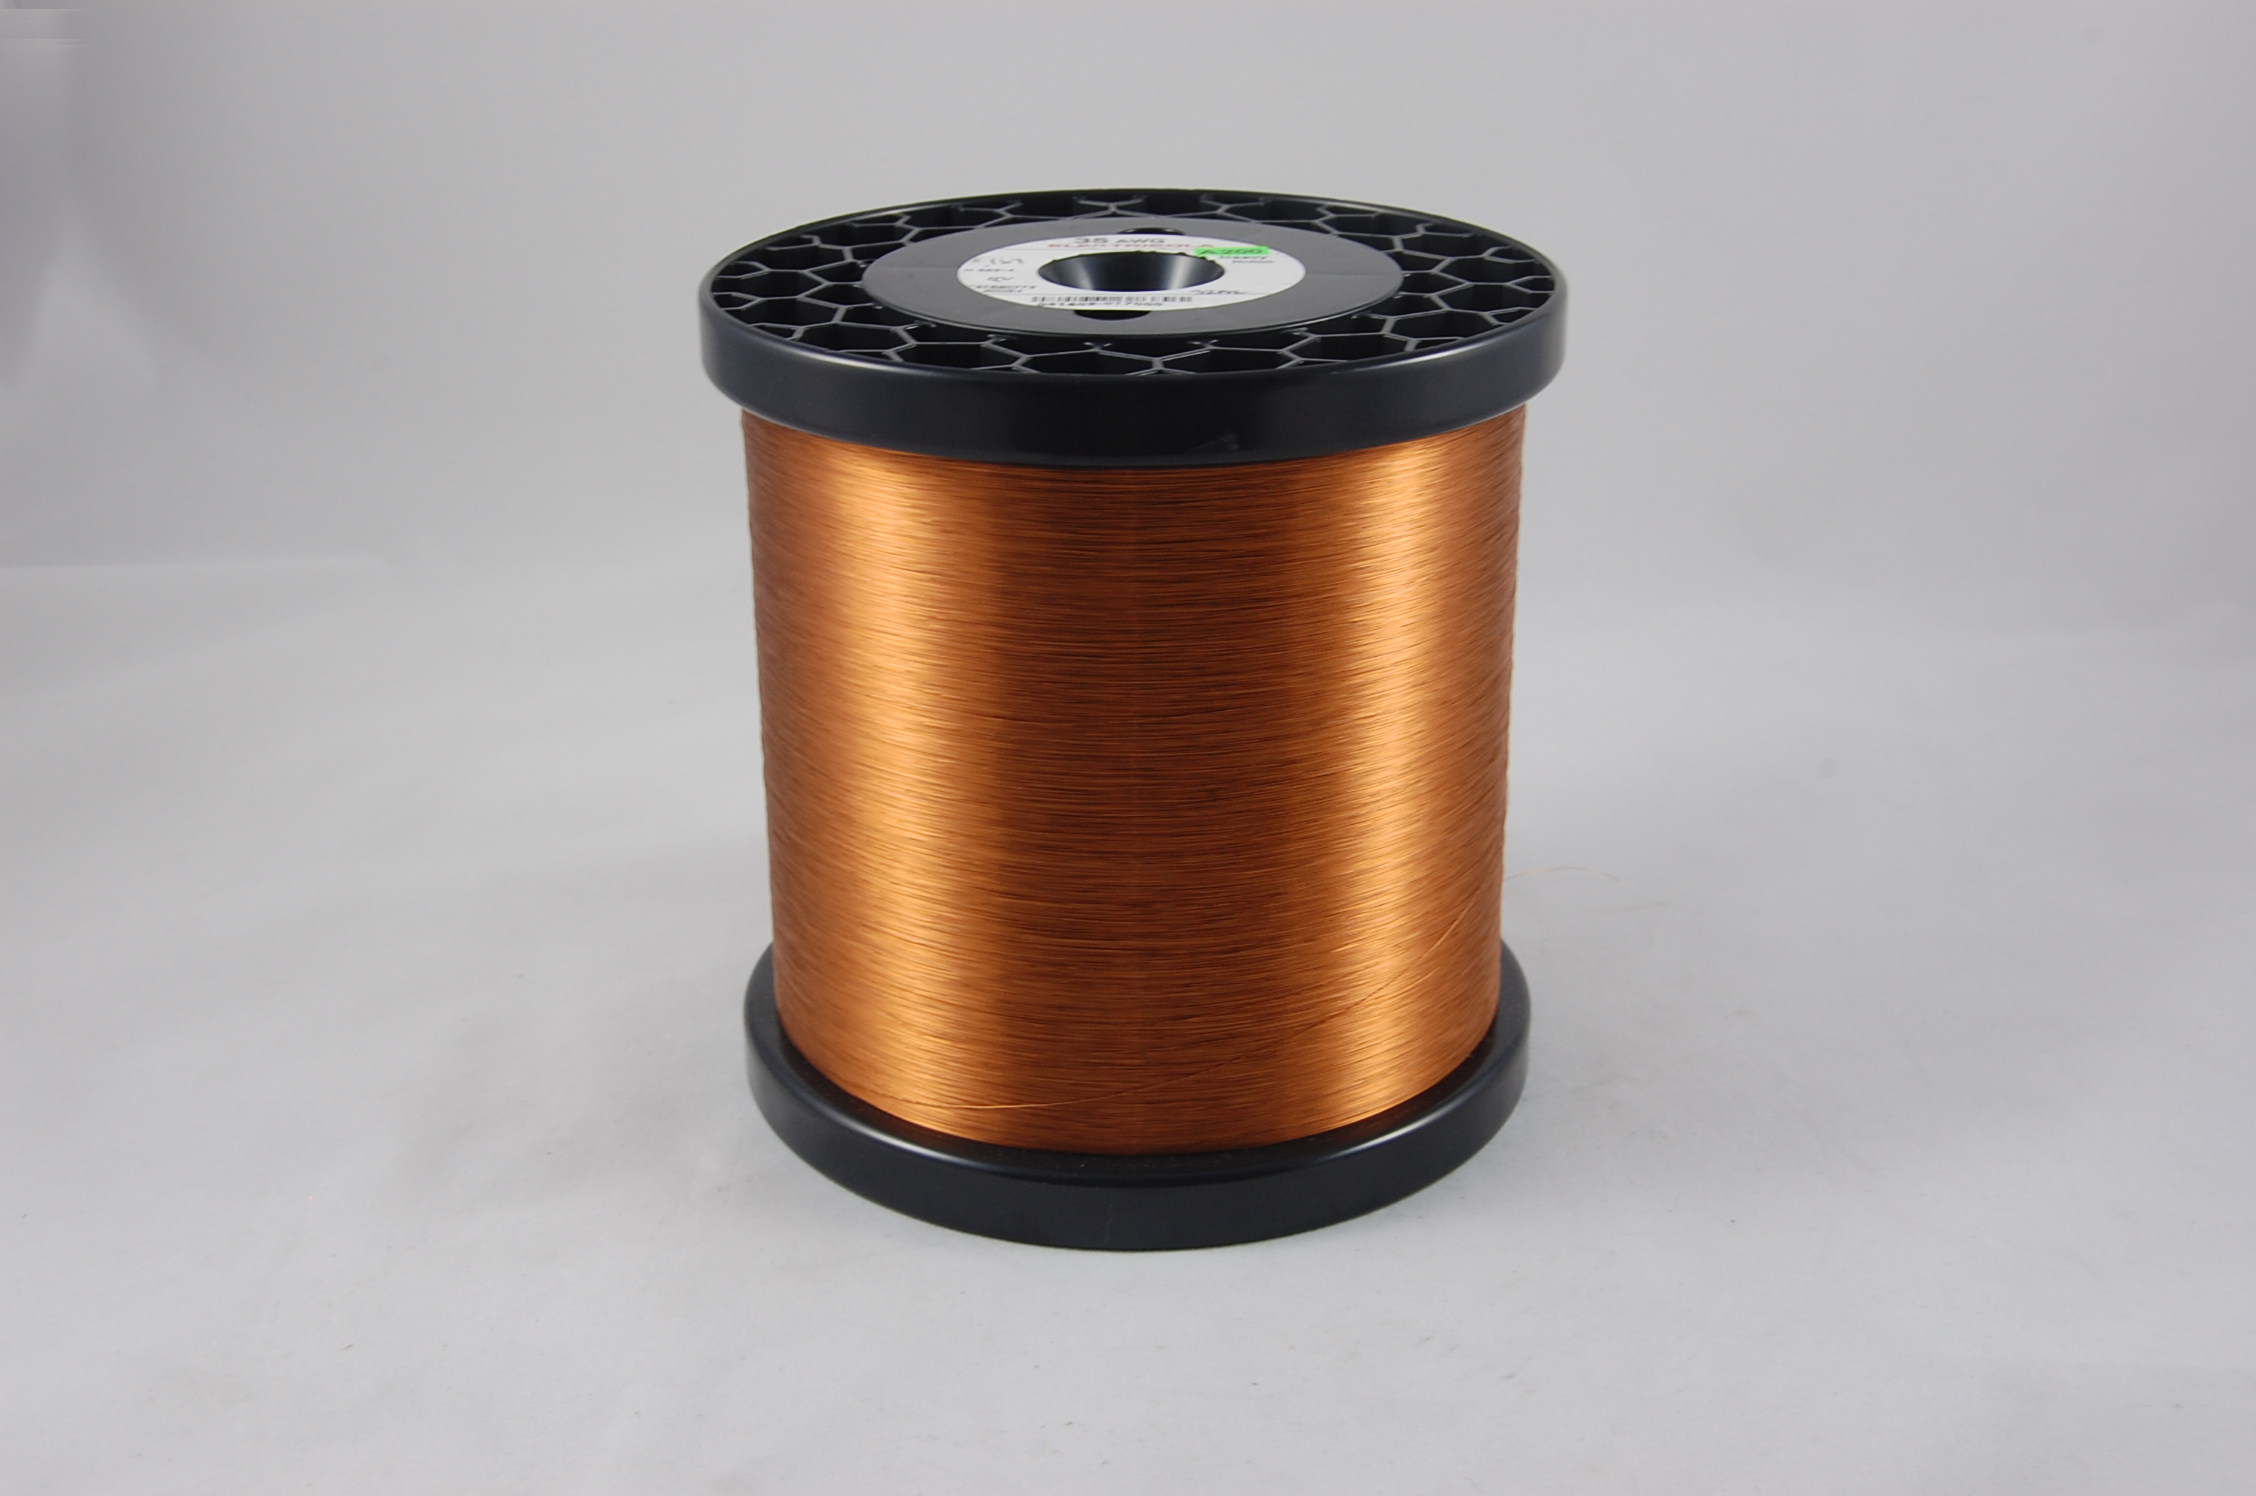 #41 Heavy Amidester 200 Round MW 74 Copper Magnet Wire 200°C, copper,  14 LB 6" x 6" spool (average wght.)